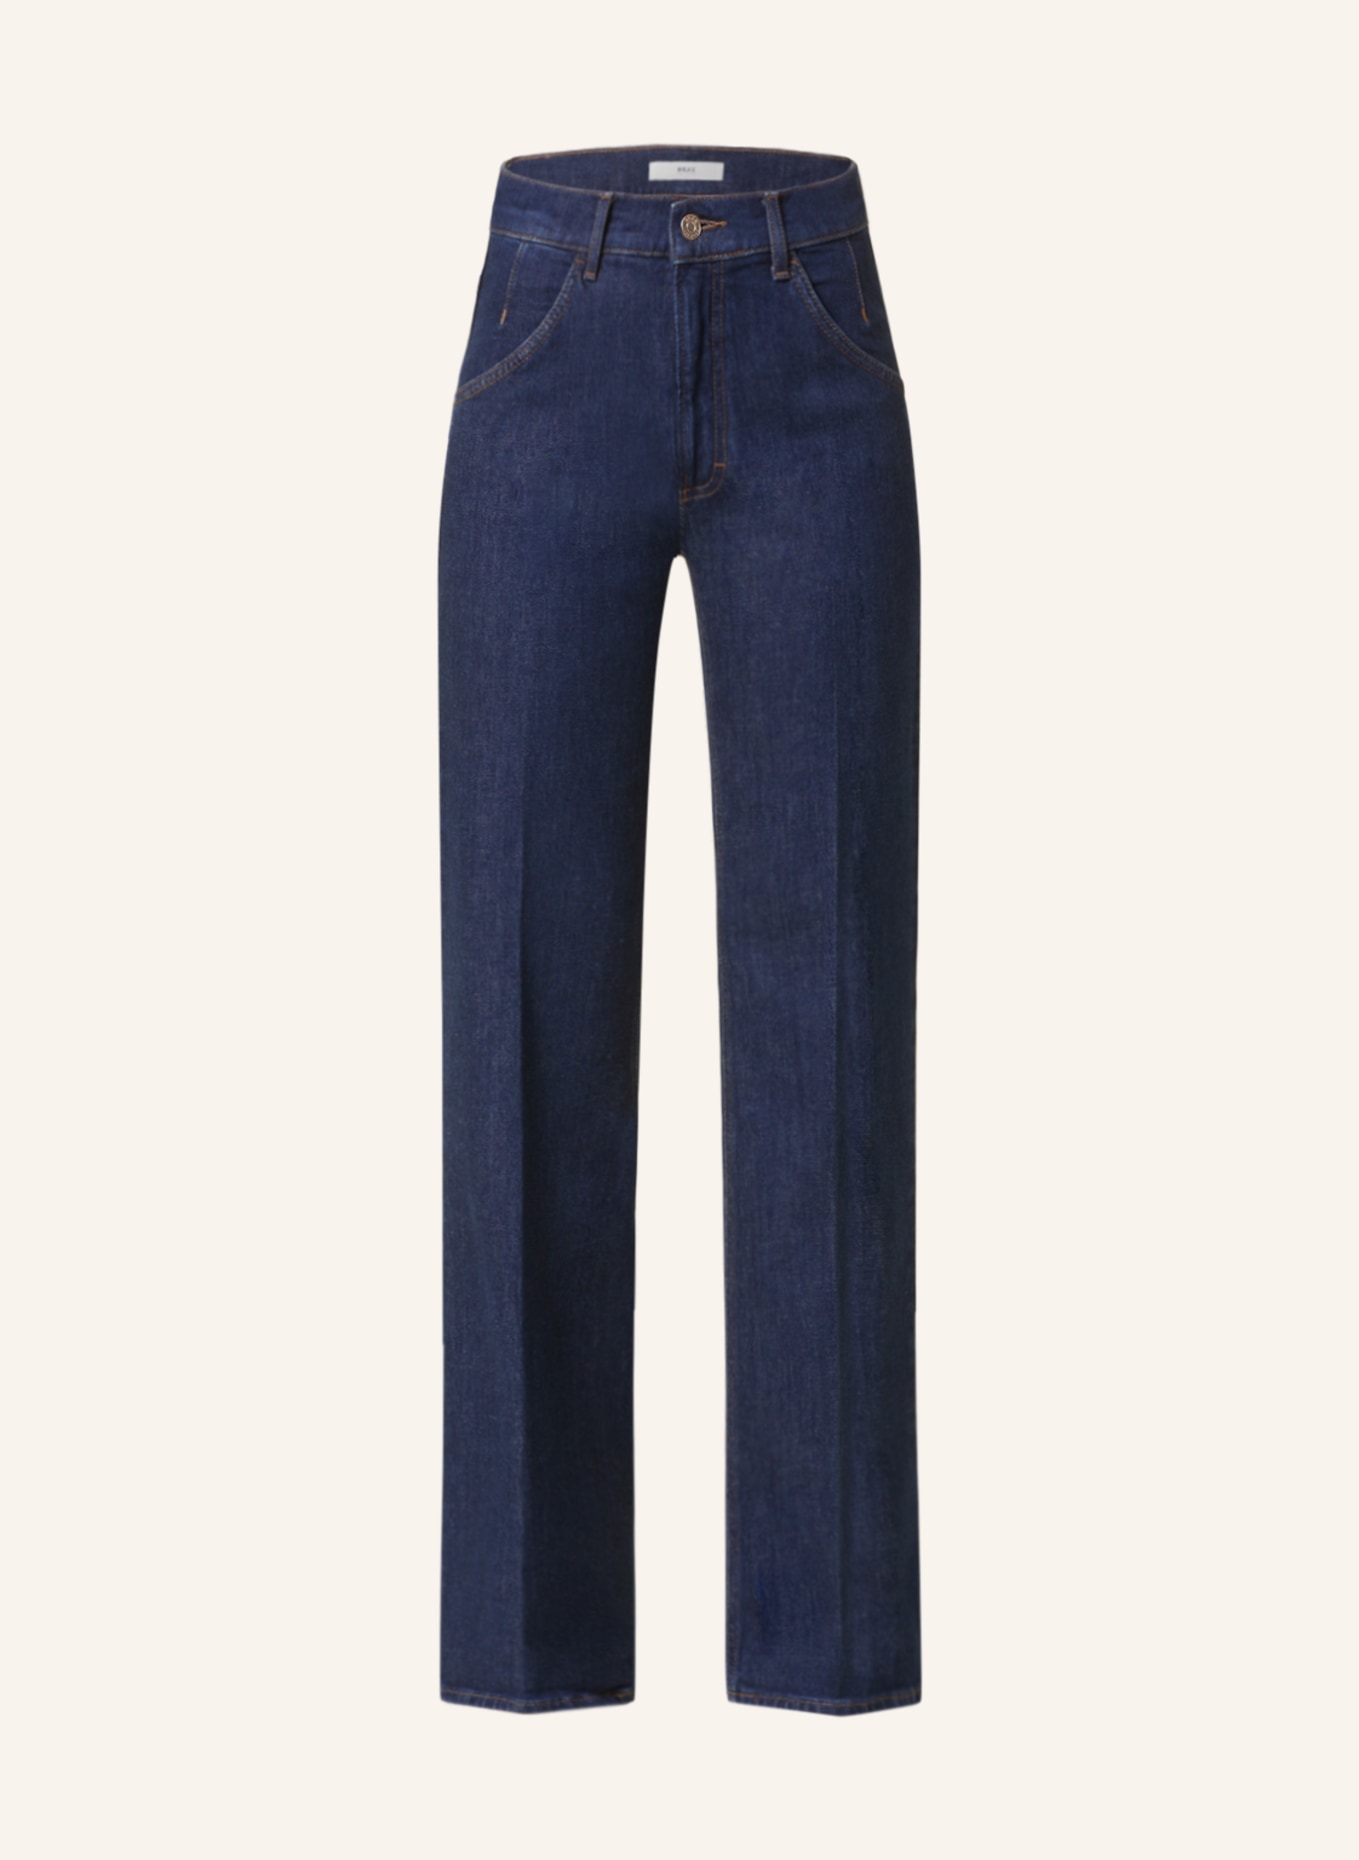 BRAX Jeans MAINE, Farbe: 12 CLEAN DARK BLUE (Bild 1)